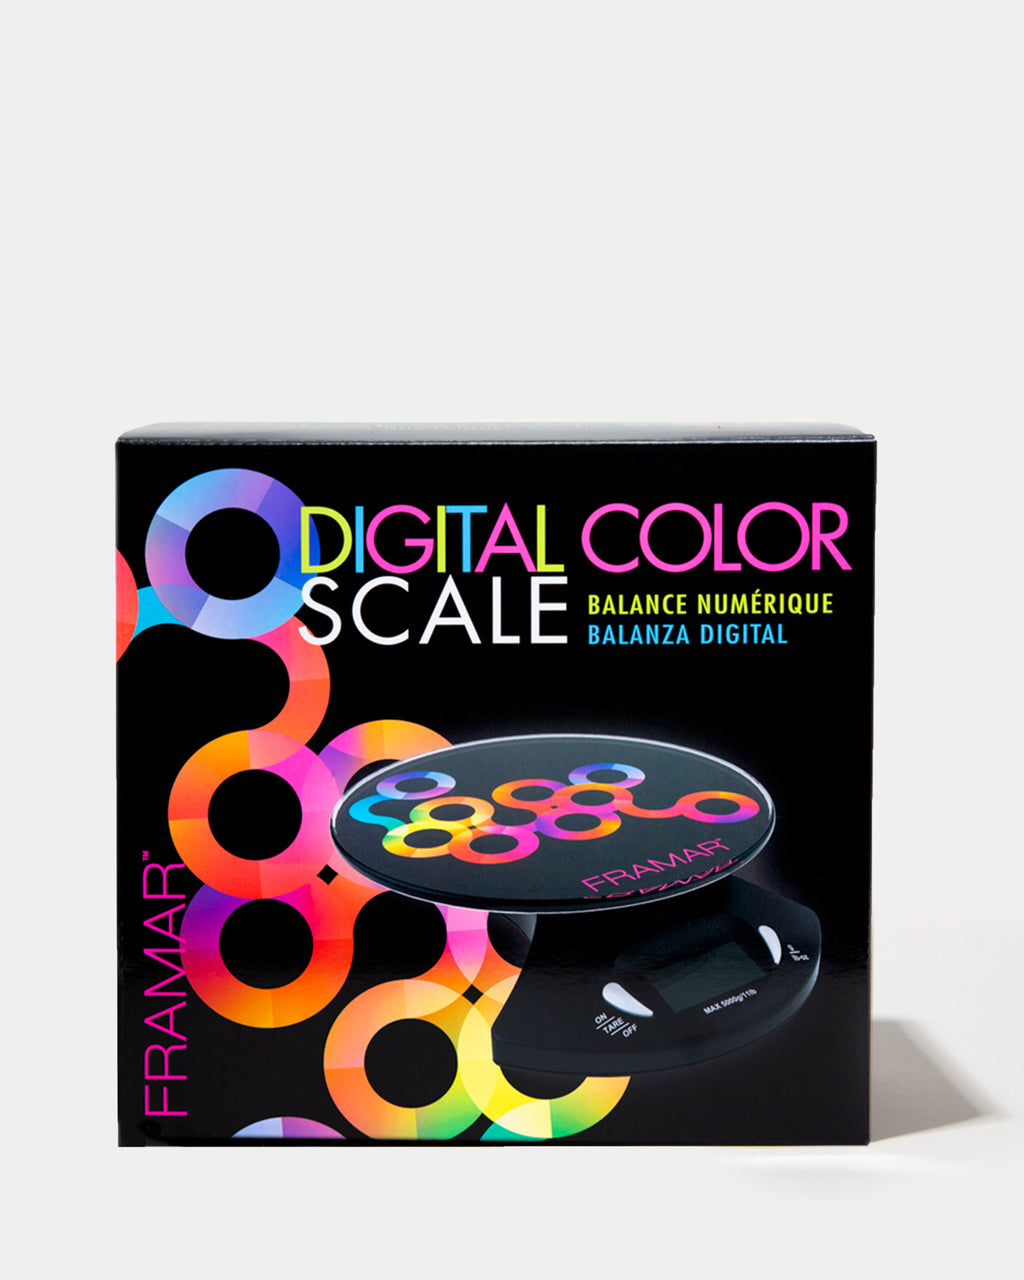 Digital scale, Salon scale, salon color scale, digital scale for grams, digital scale for hair color, digital scale weight